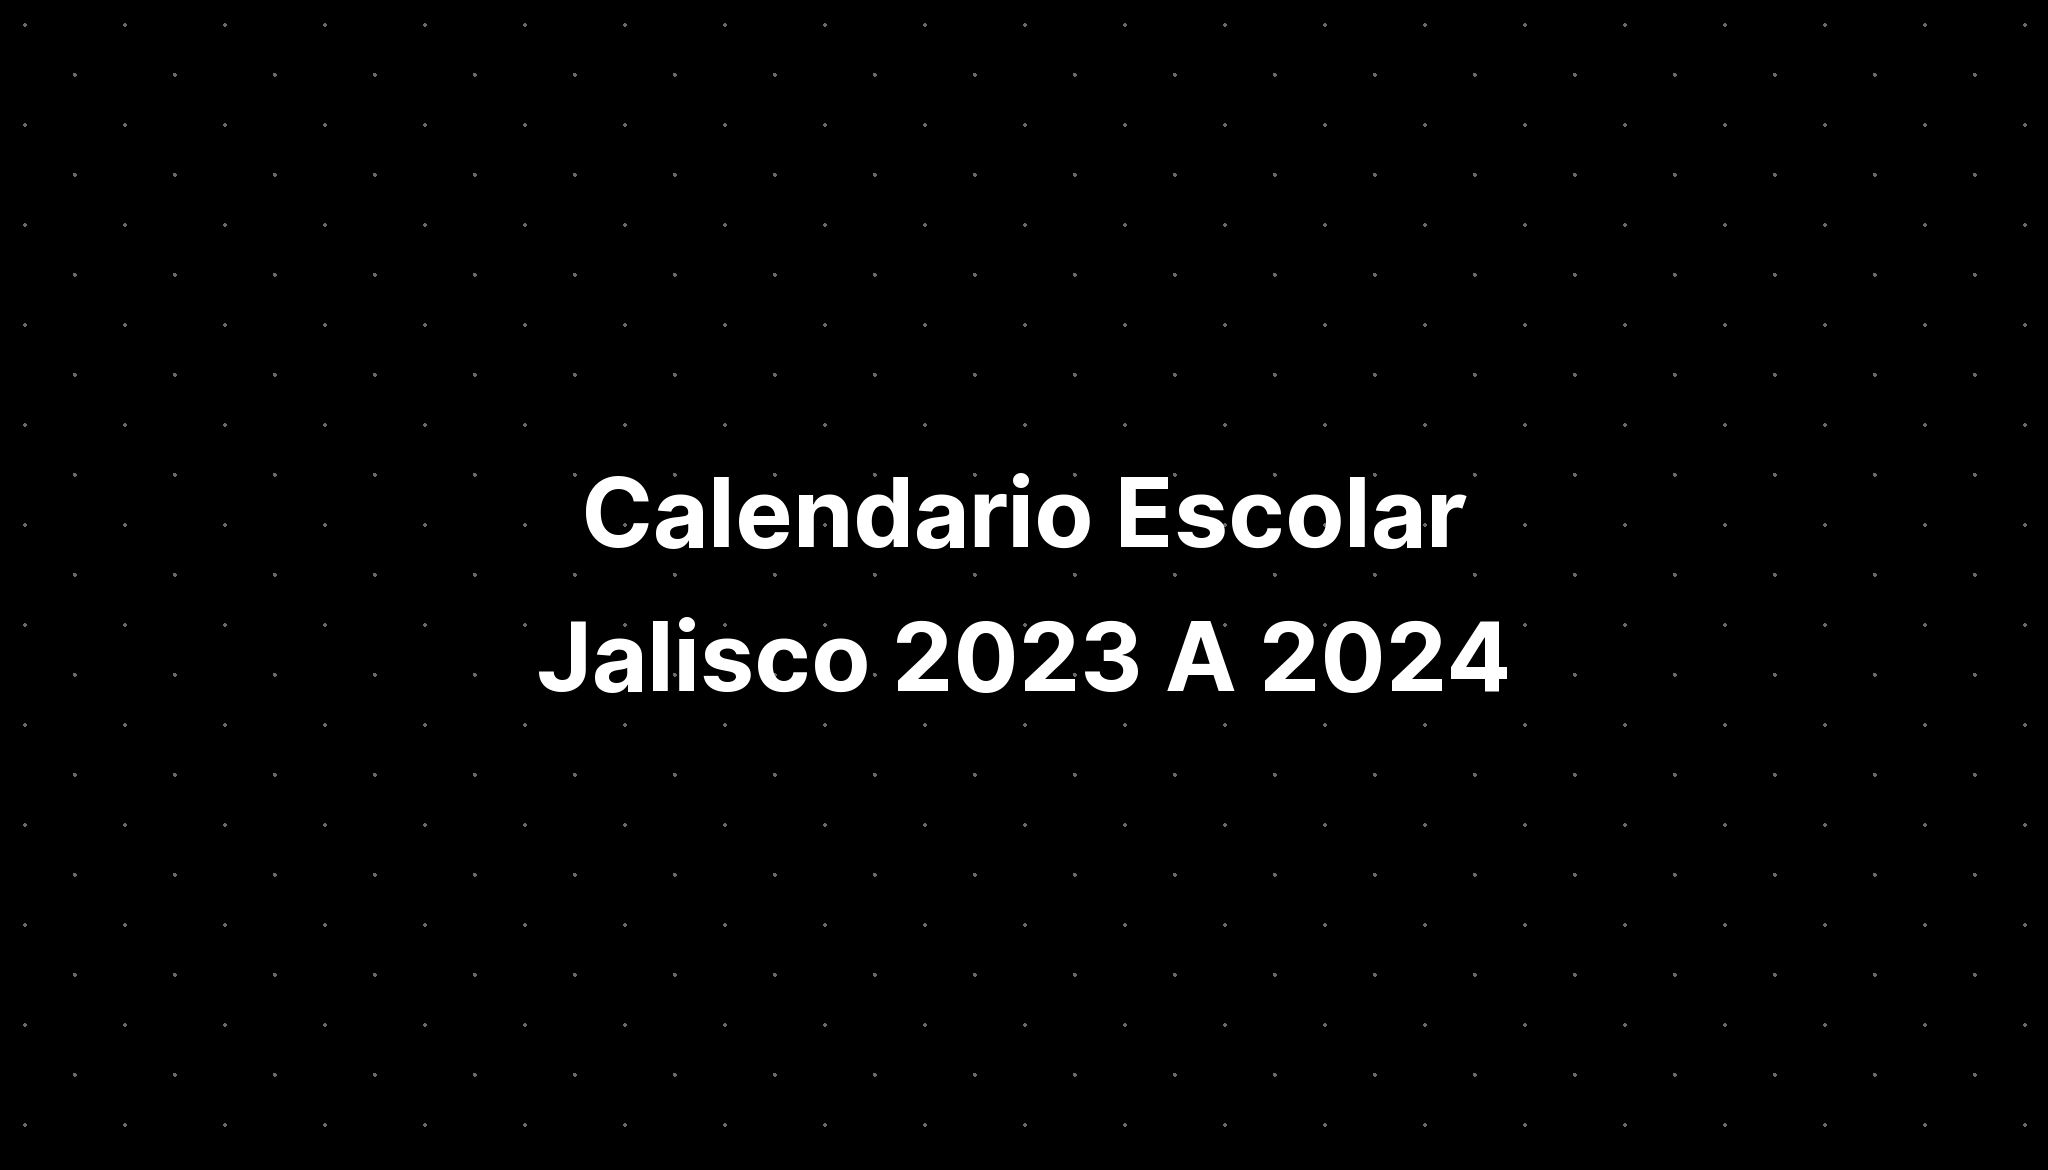 Calendario Escolar Jalisco 2023 A 2024 IMAGESEE